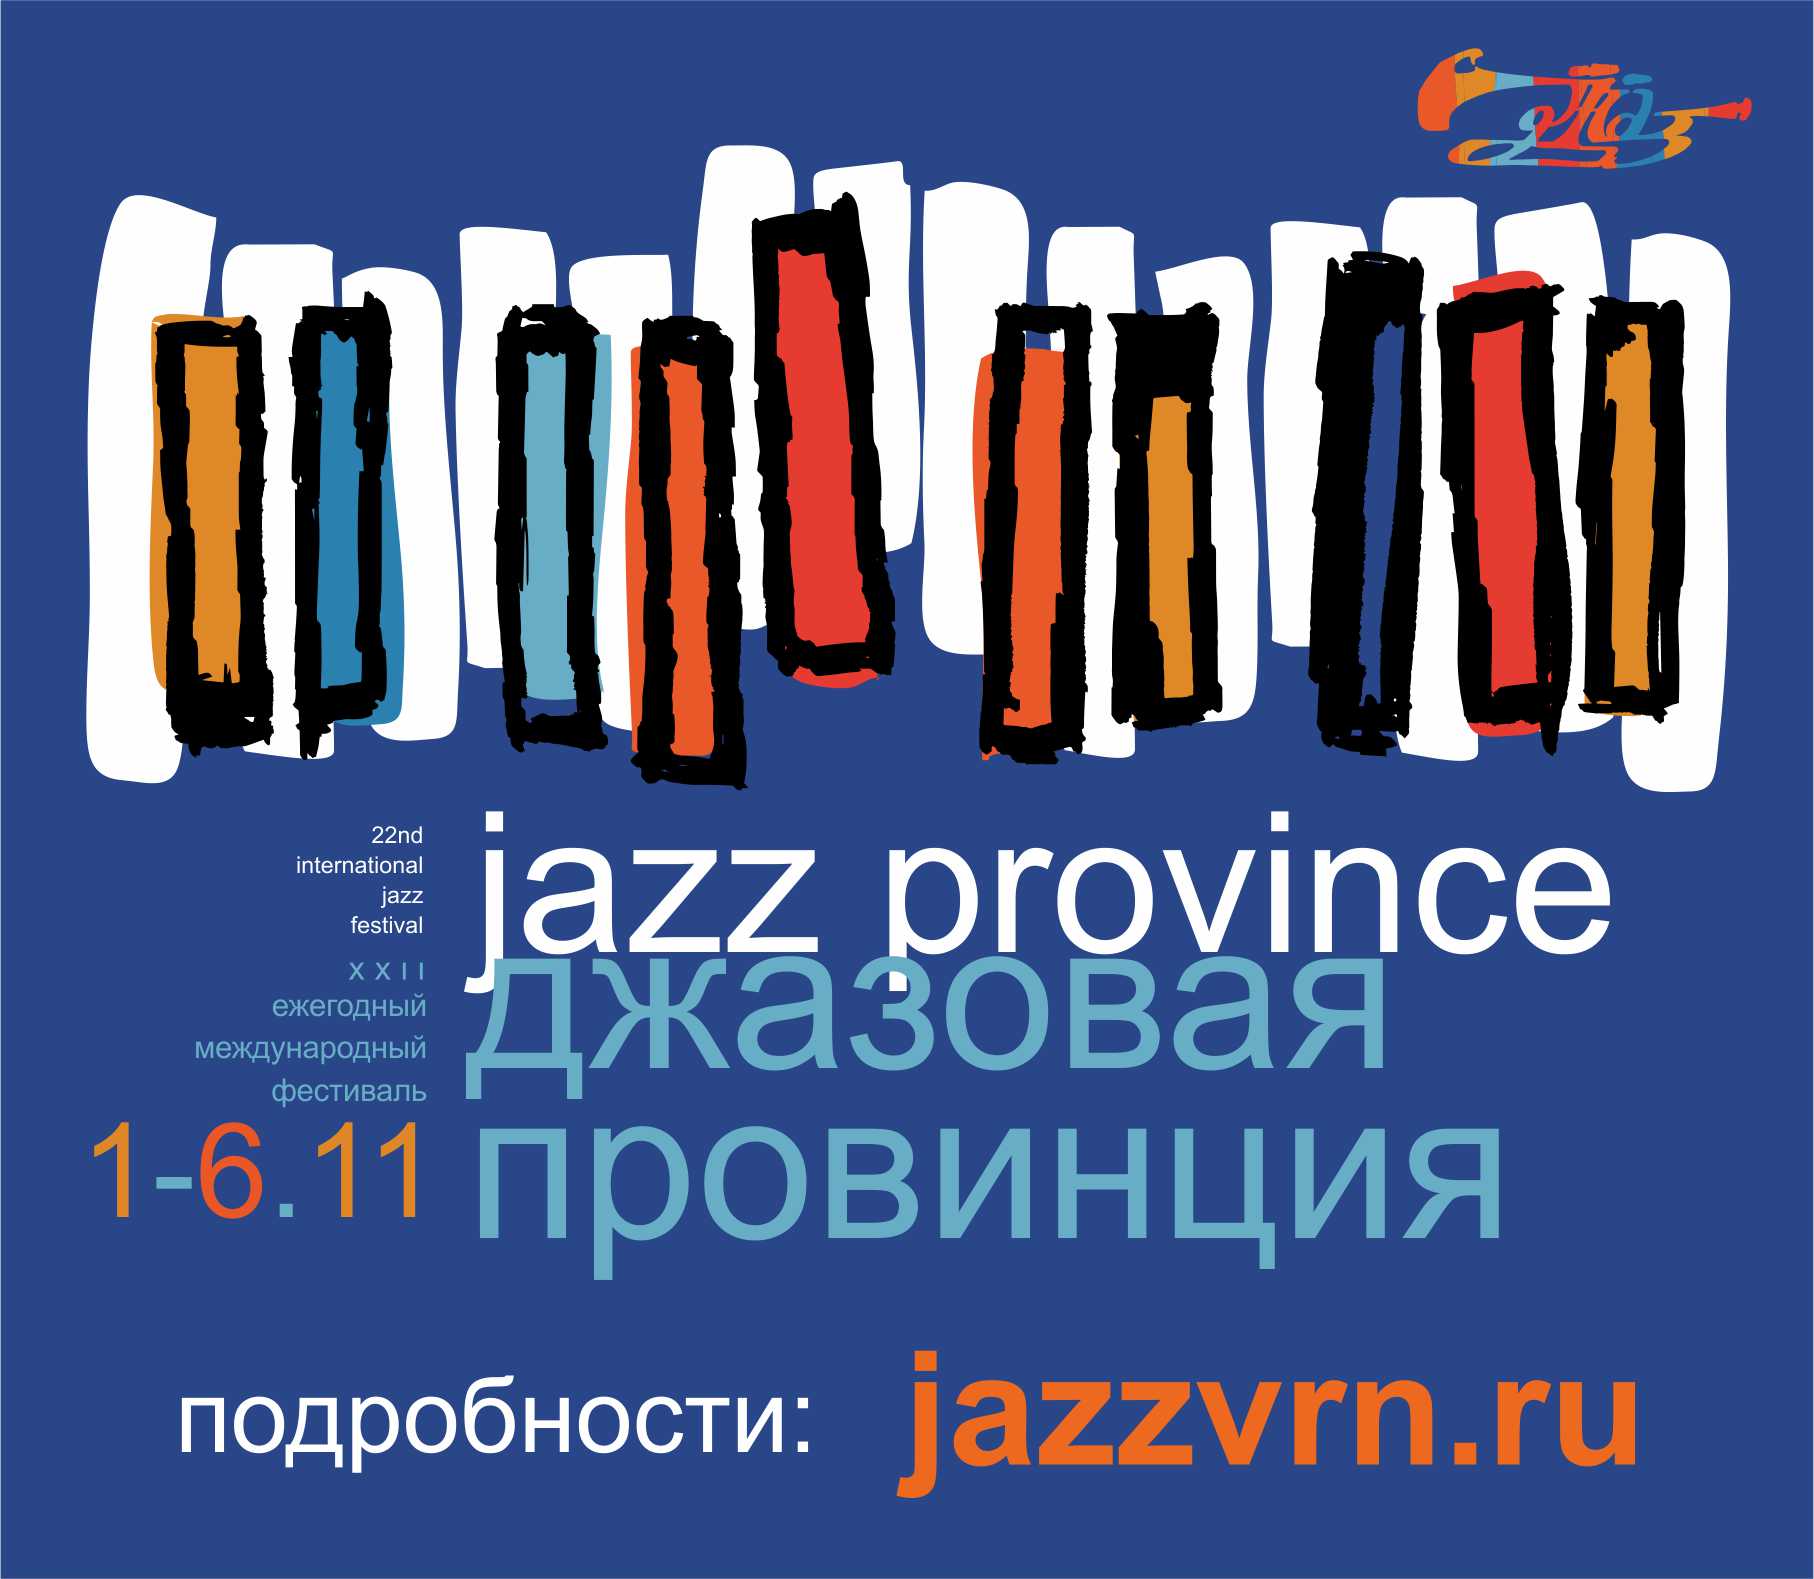 Представляем фирменный стиль XXII Международного фестиваля «Джазовая провинция»